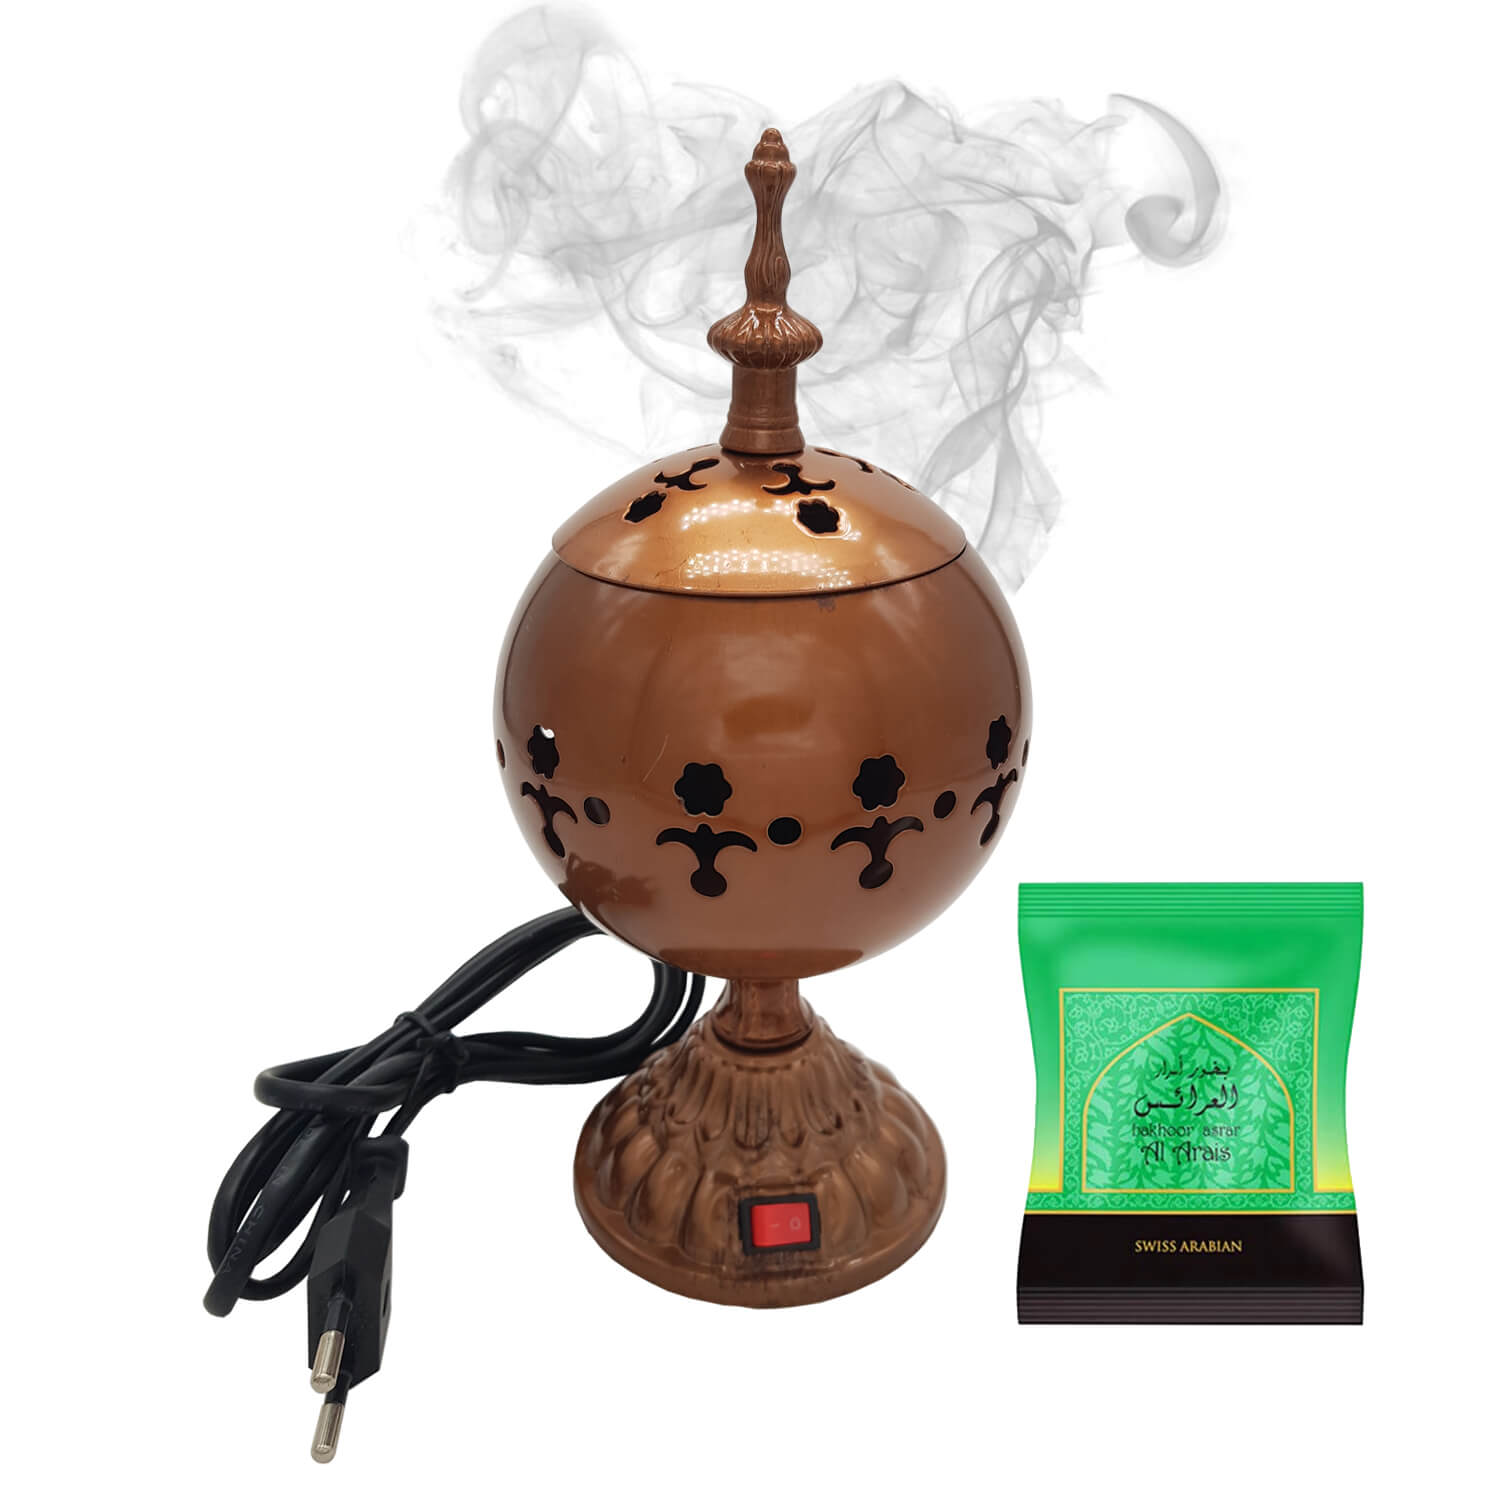 Exclusive Electrical Bakhoor Burner & 40g Fragrance Paste - Copper